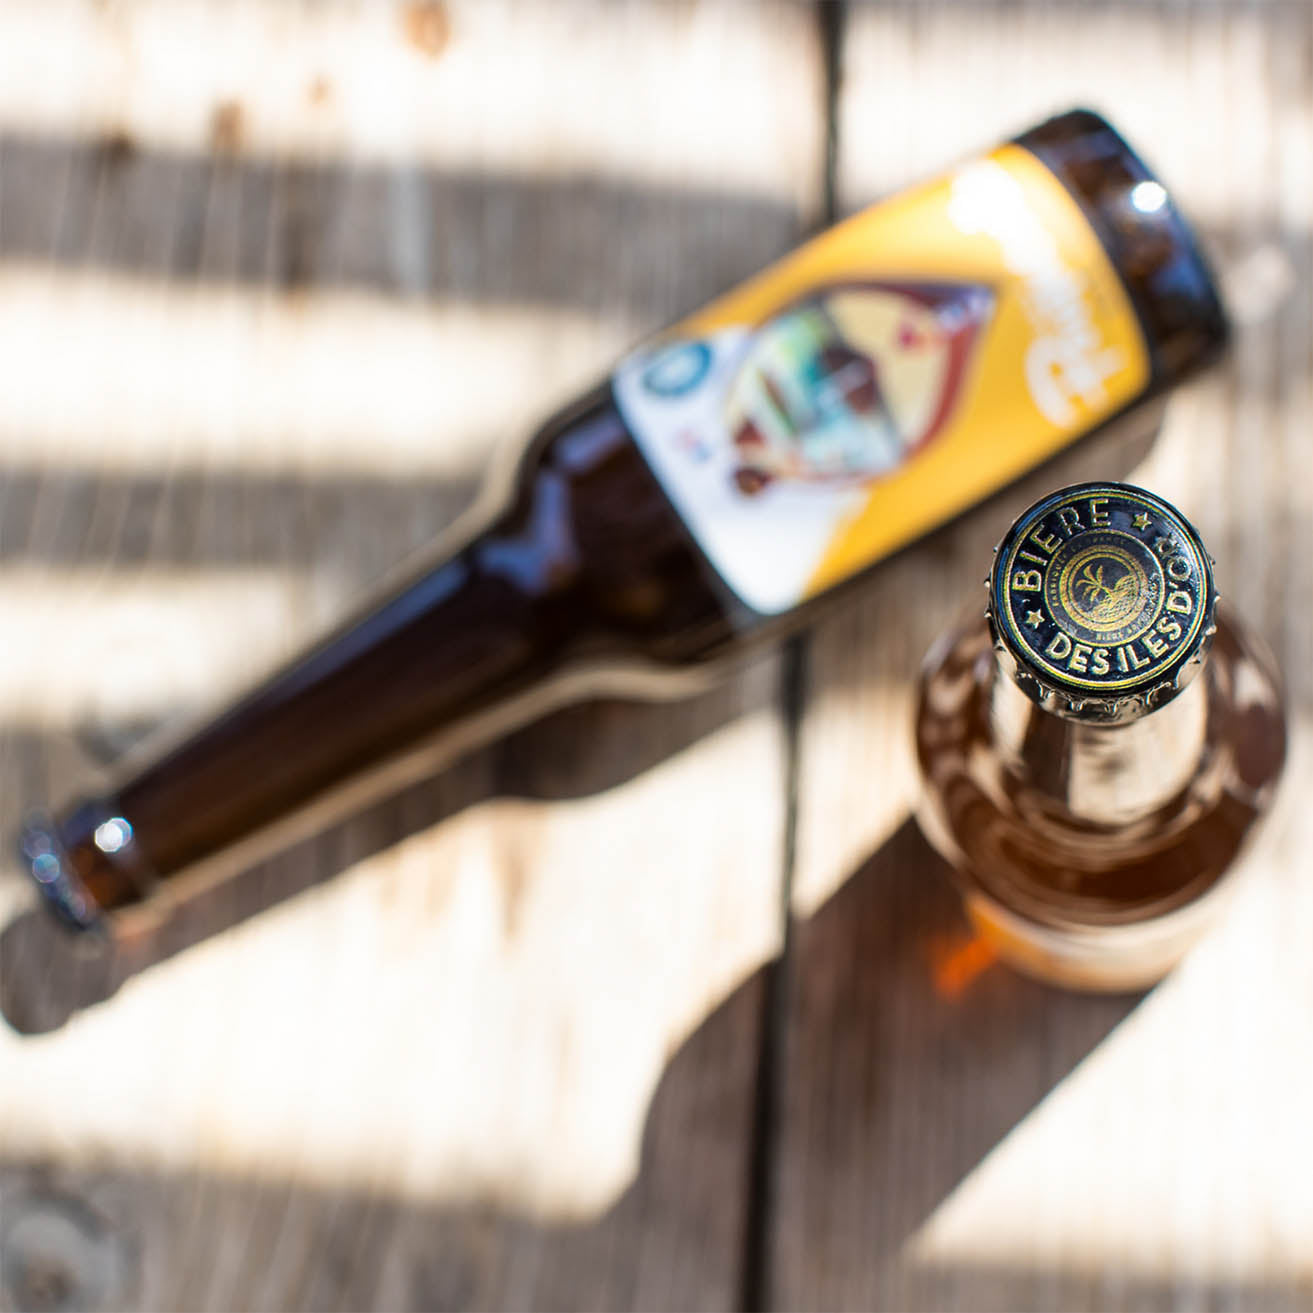 La Bière des Iles d'Or - "Virée à Porquerolles" Blonde Ale